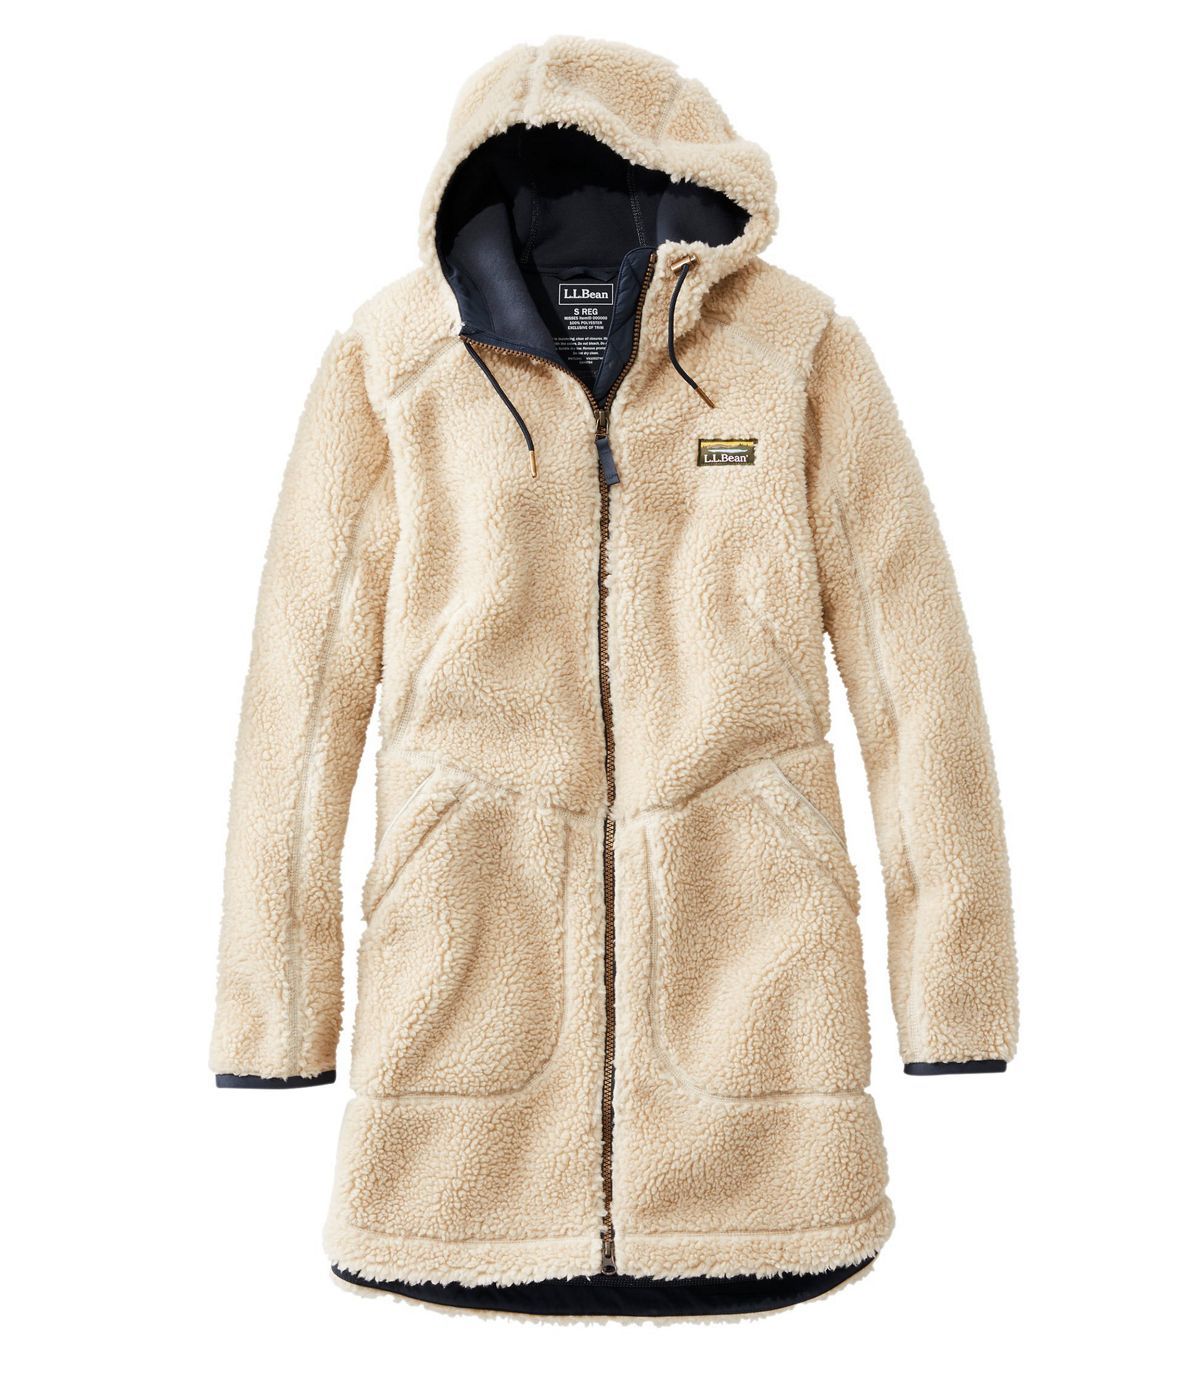 MMCP Women Winter Warm Solid Lightweight Hooded Down Coat Puffer Jacket Outwear